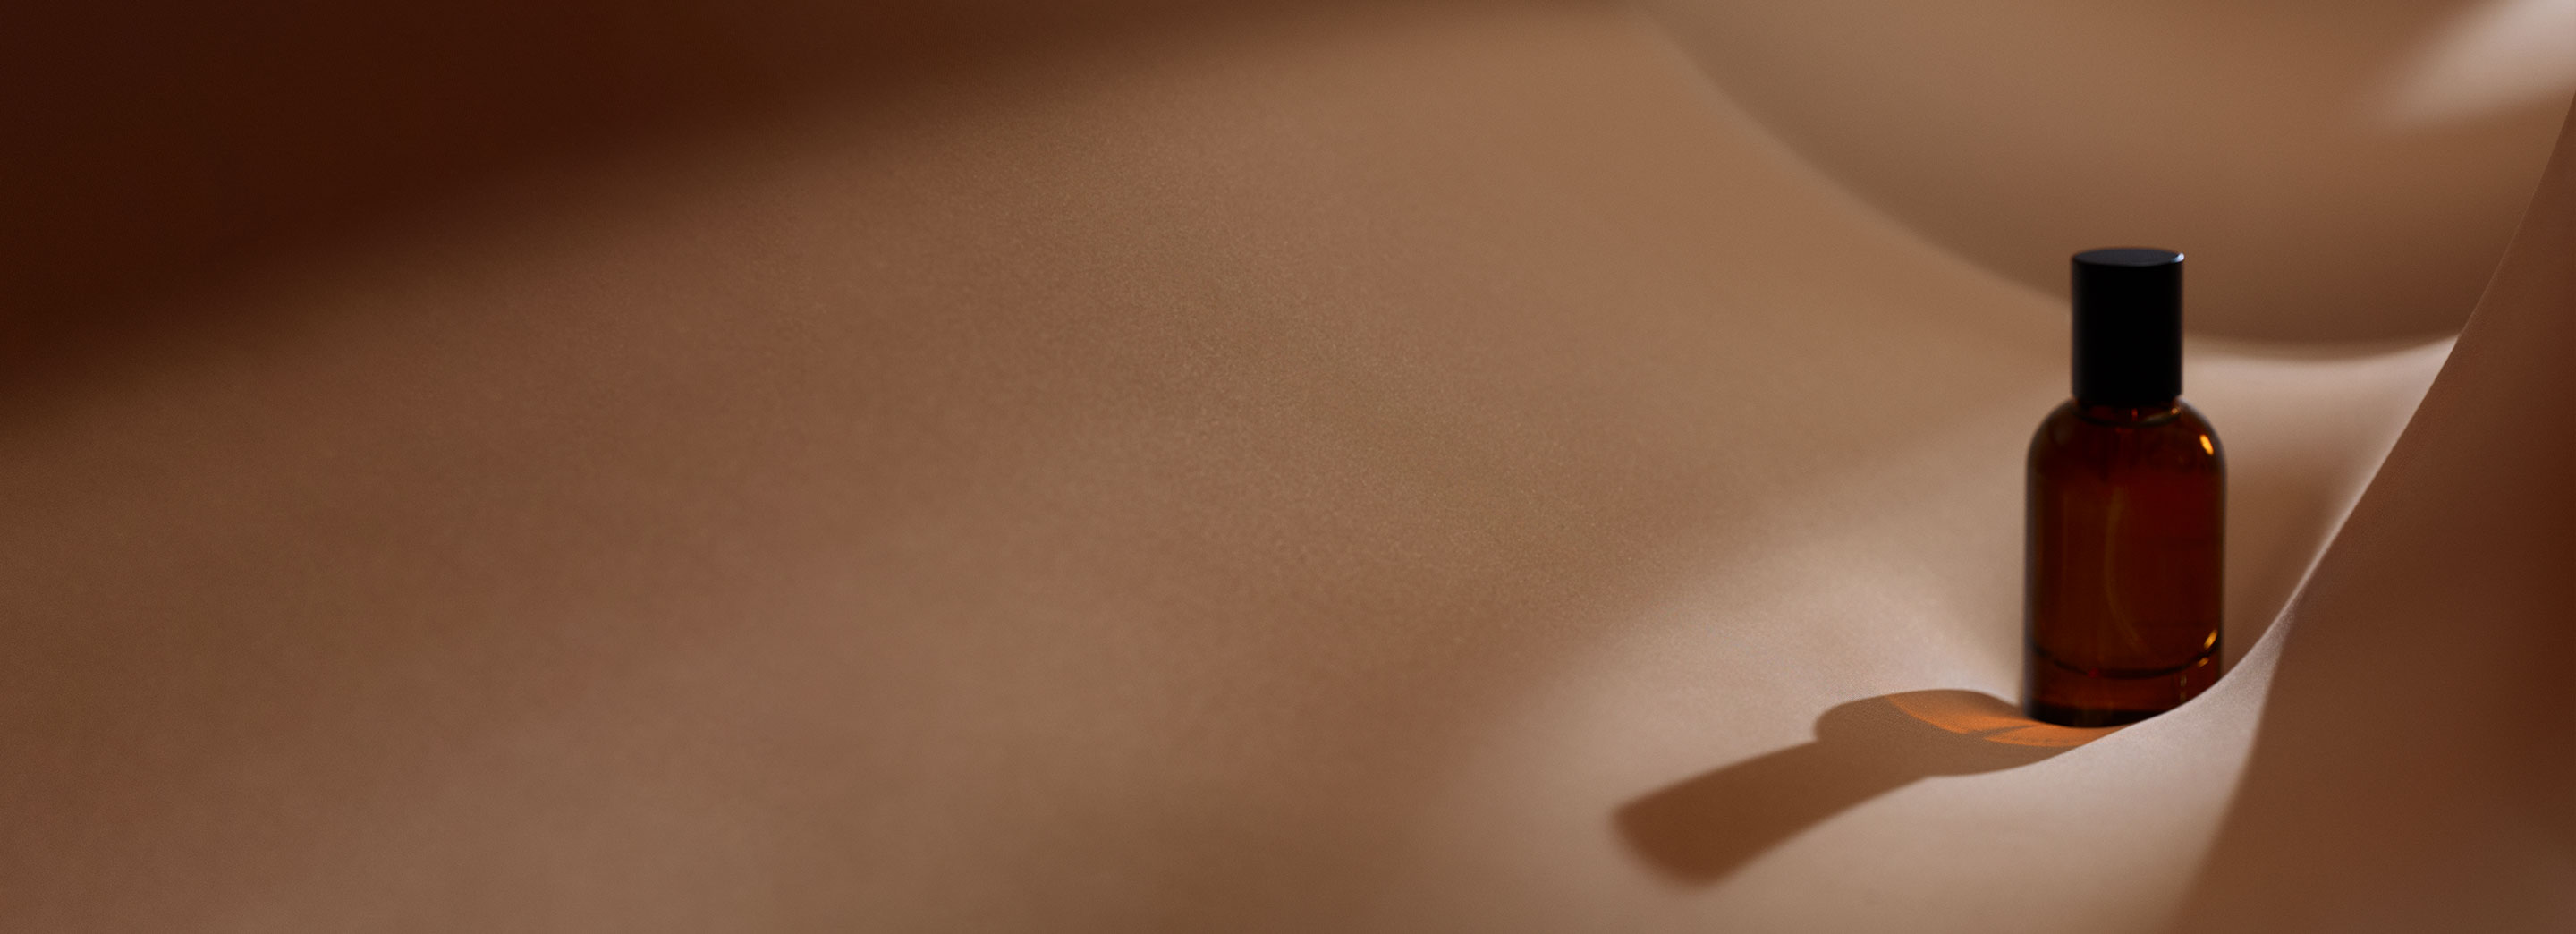 身体と心を纏うイソップのオードパルファム | Aesop 日本